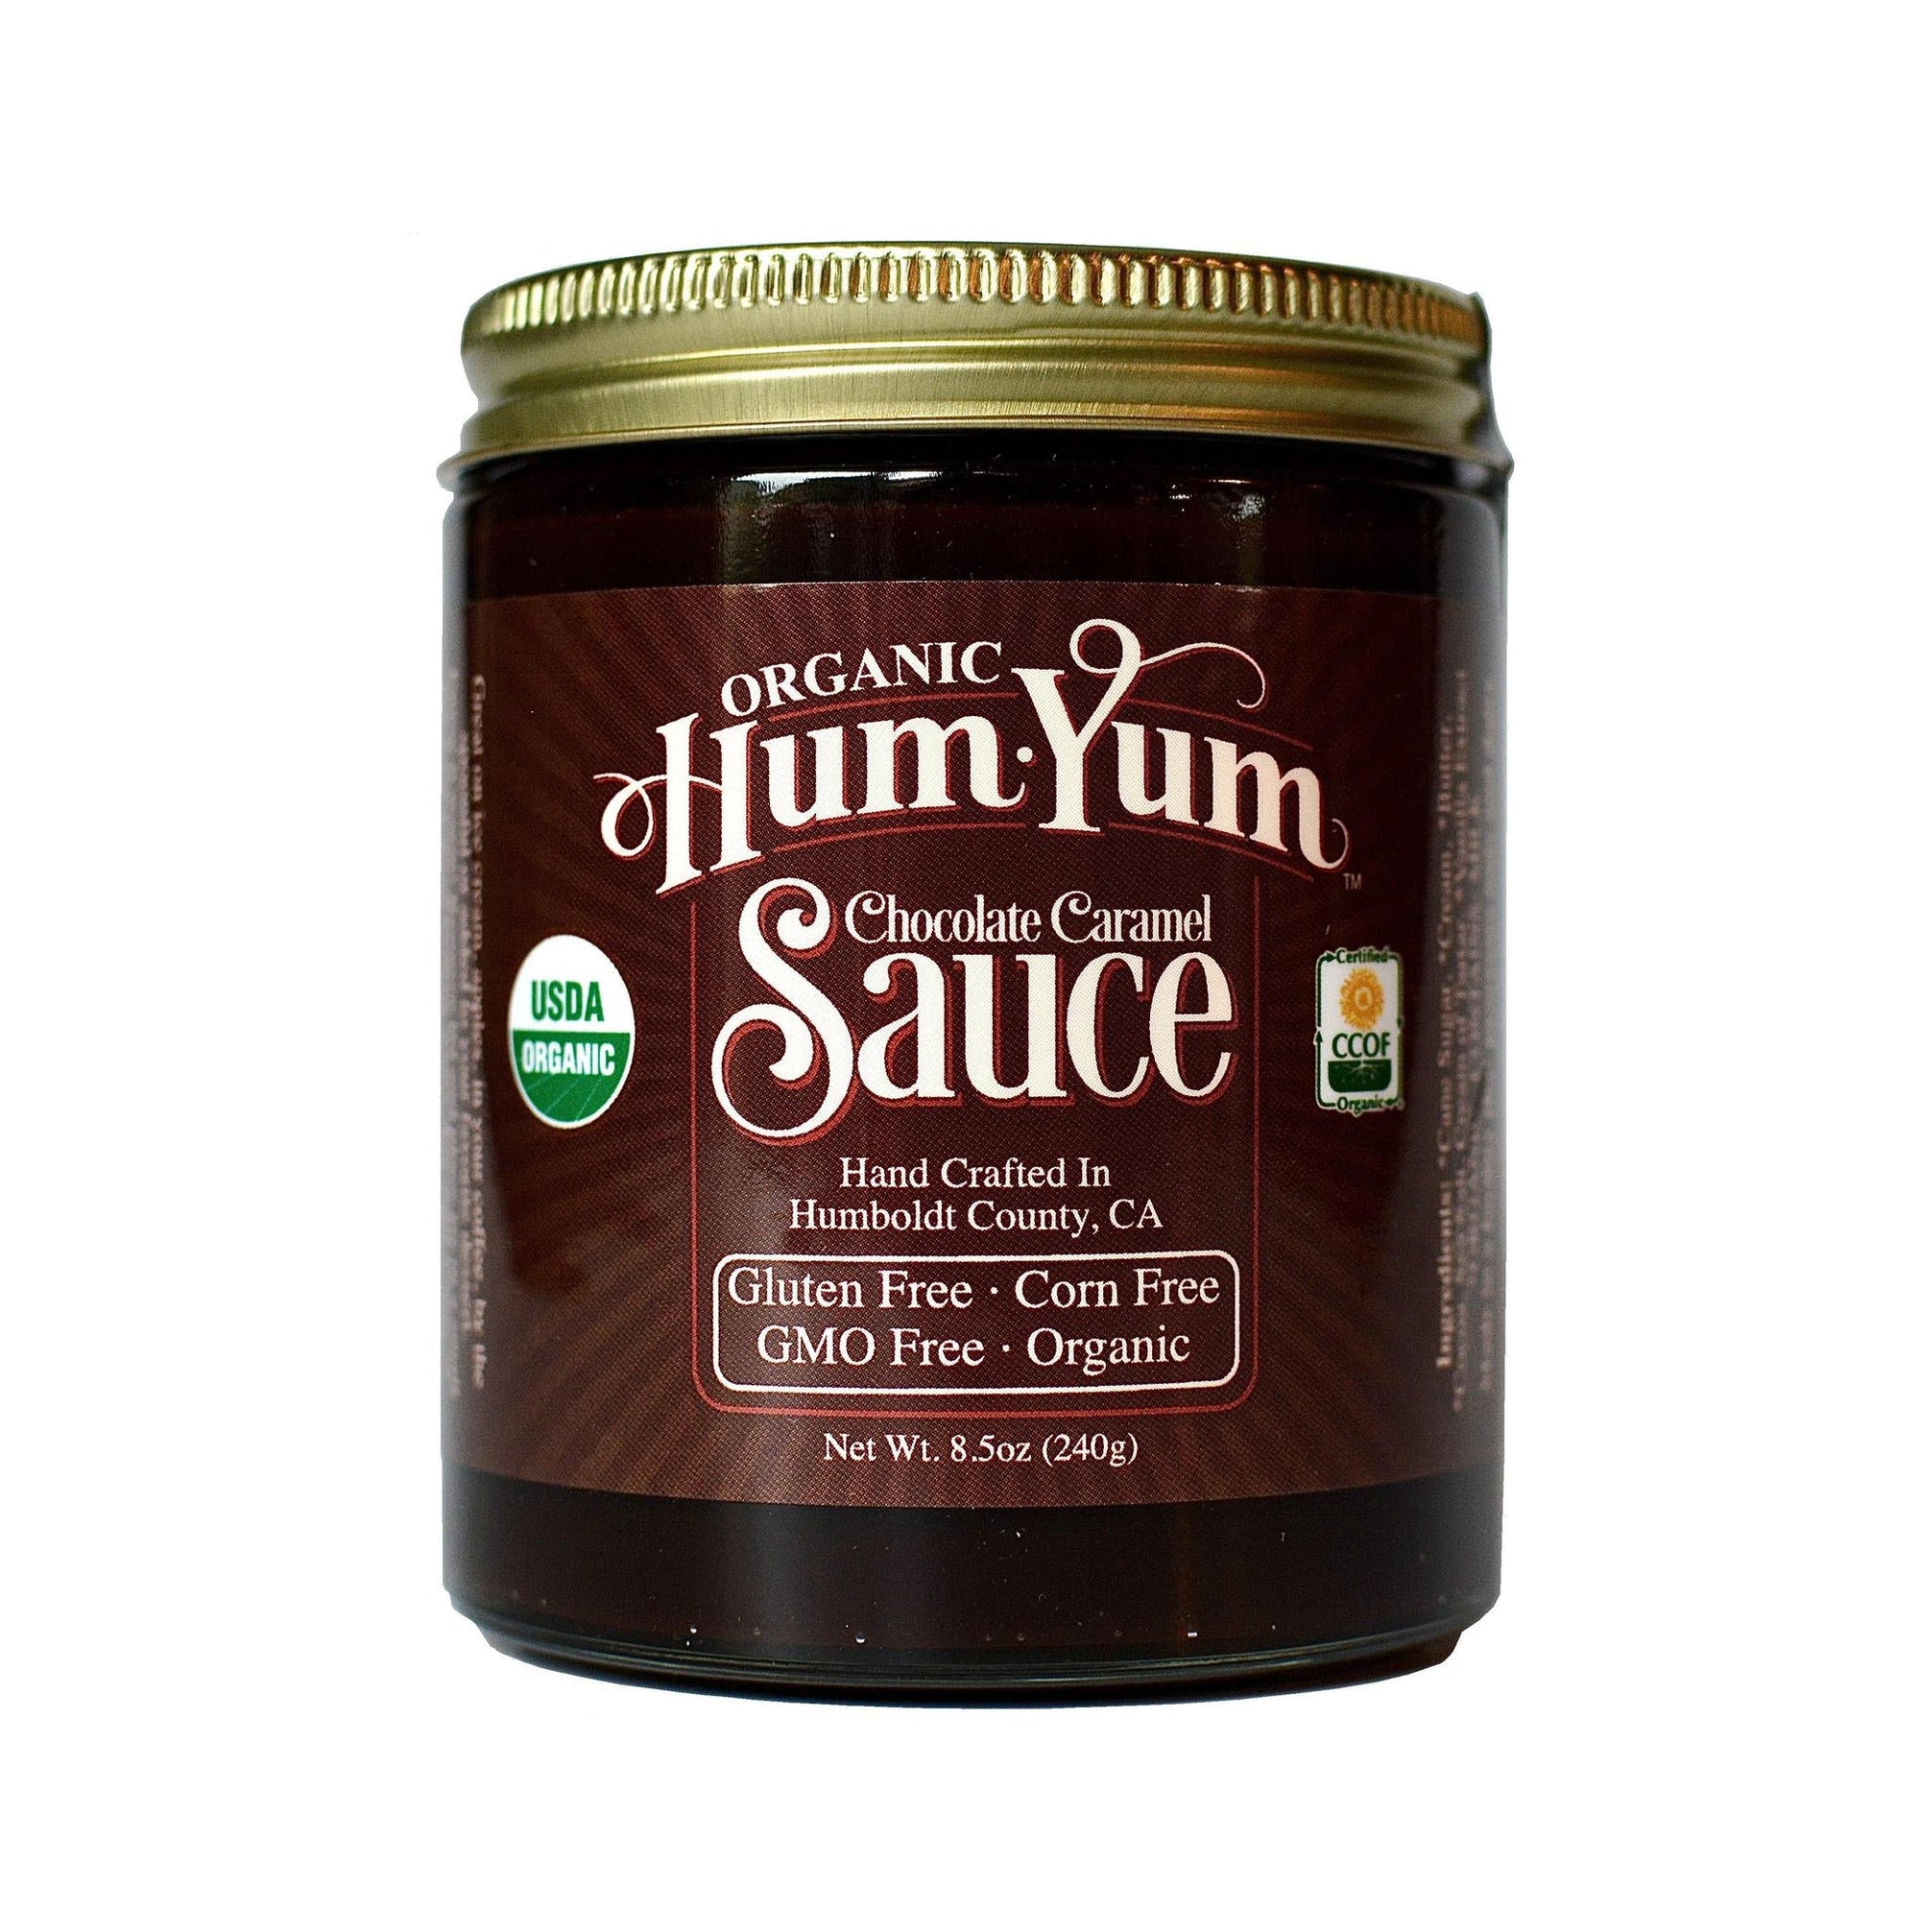 Hum Yum Caramel Sauce | Chocolate Caramel